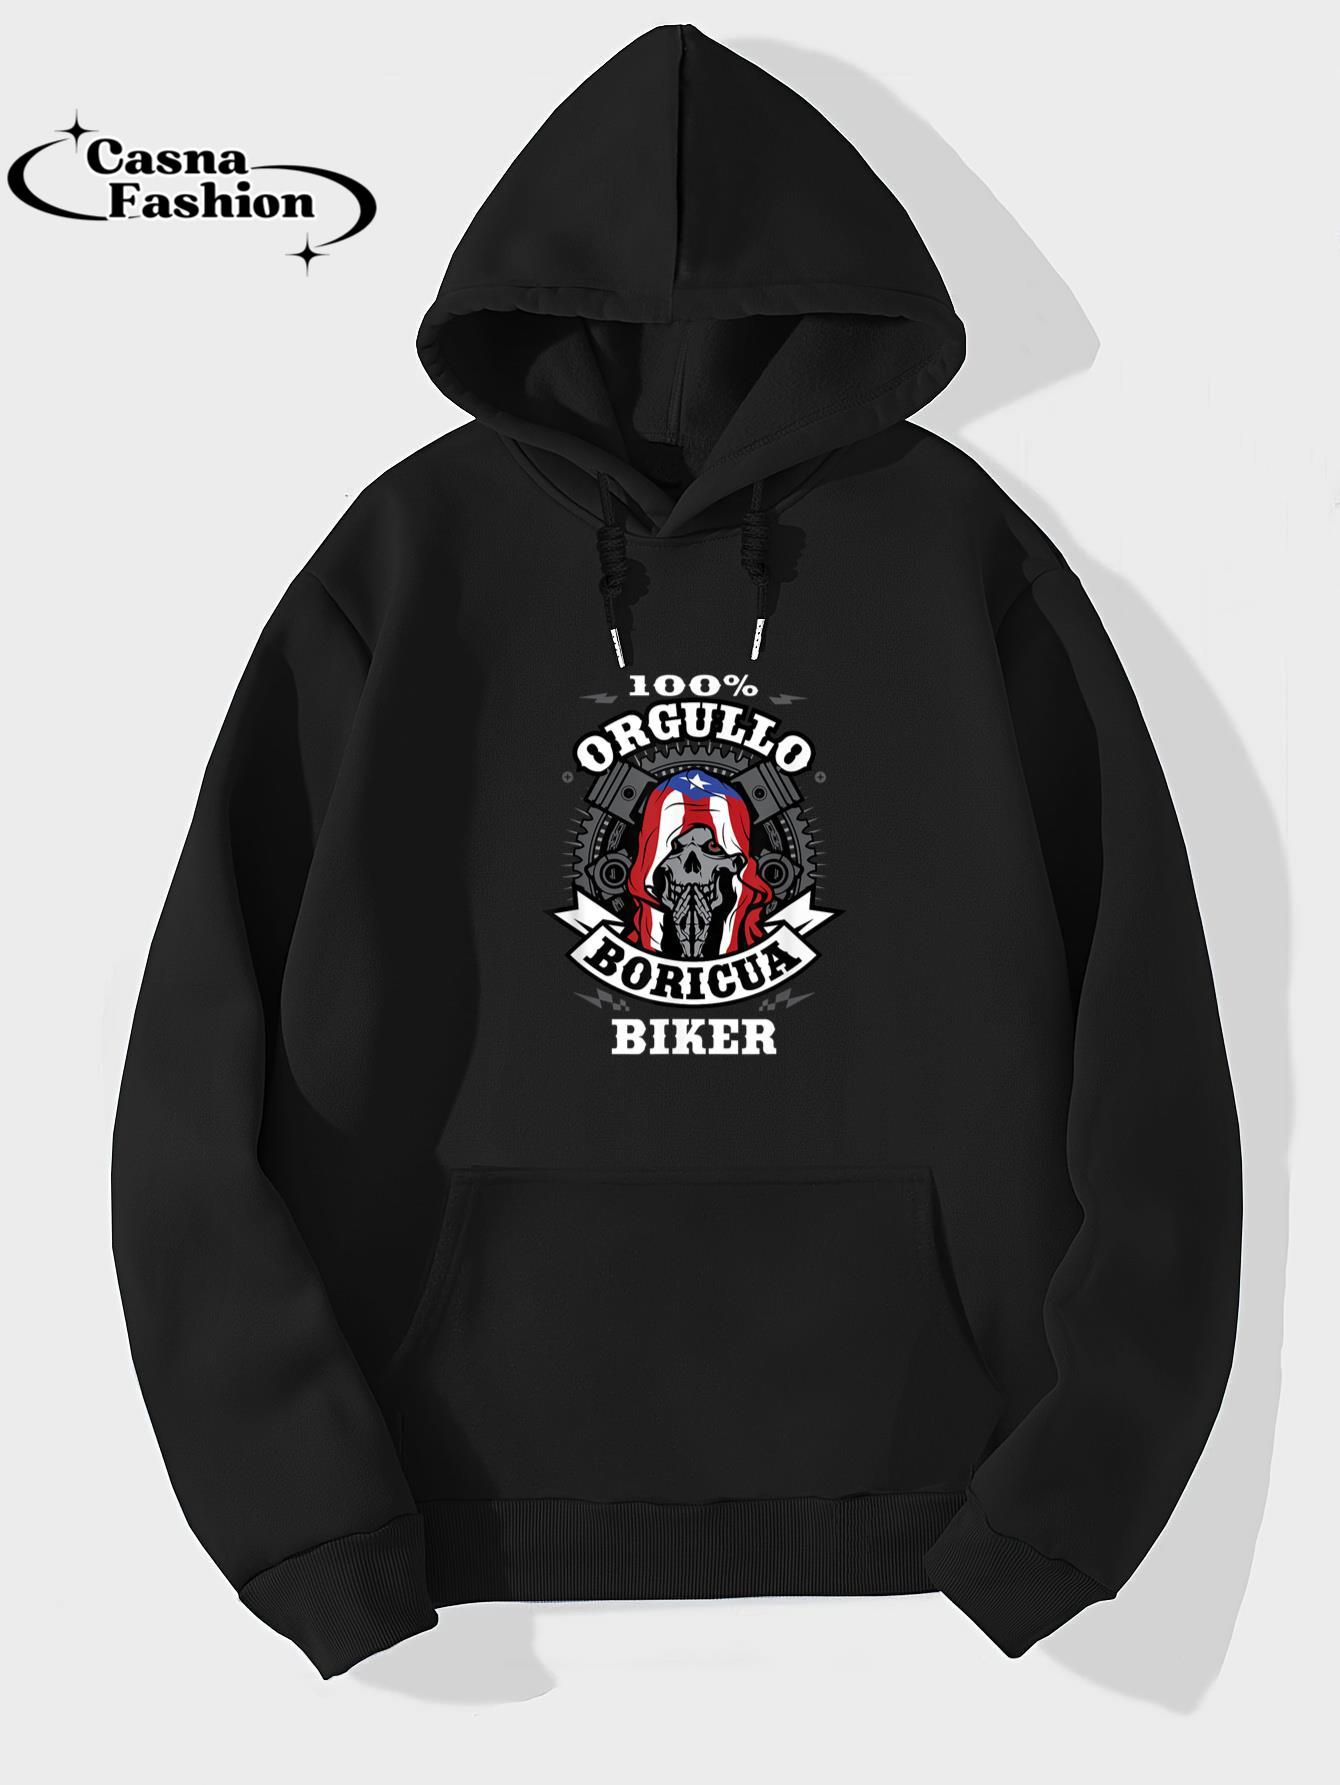 casnafashion_Hoodie_100% Orgullo Boricua ( Puerto Rican Pride ) Biker T-Shirt_hoodie_black hoodie